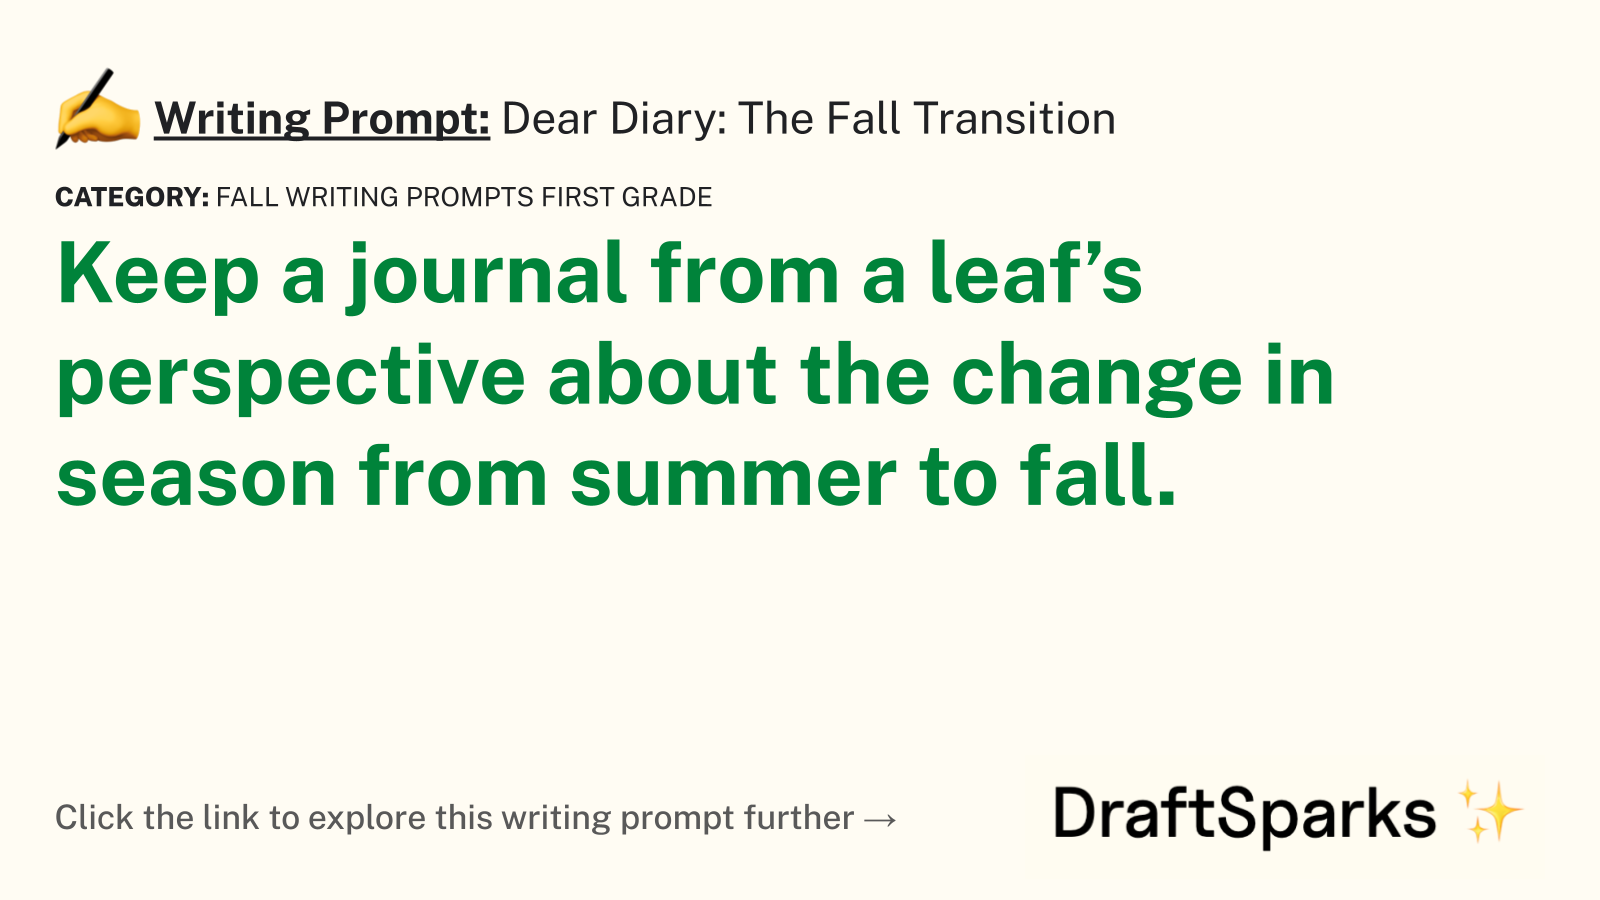 Dear Diary: The Fall Transition